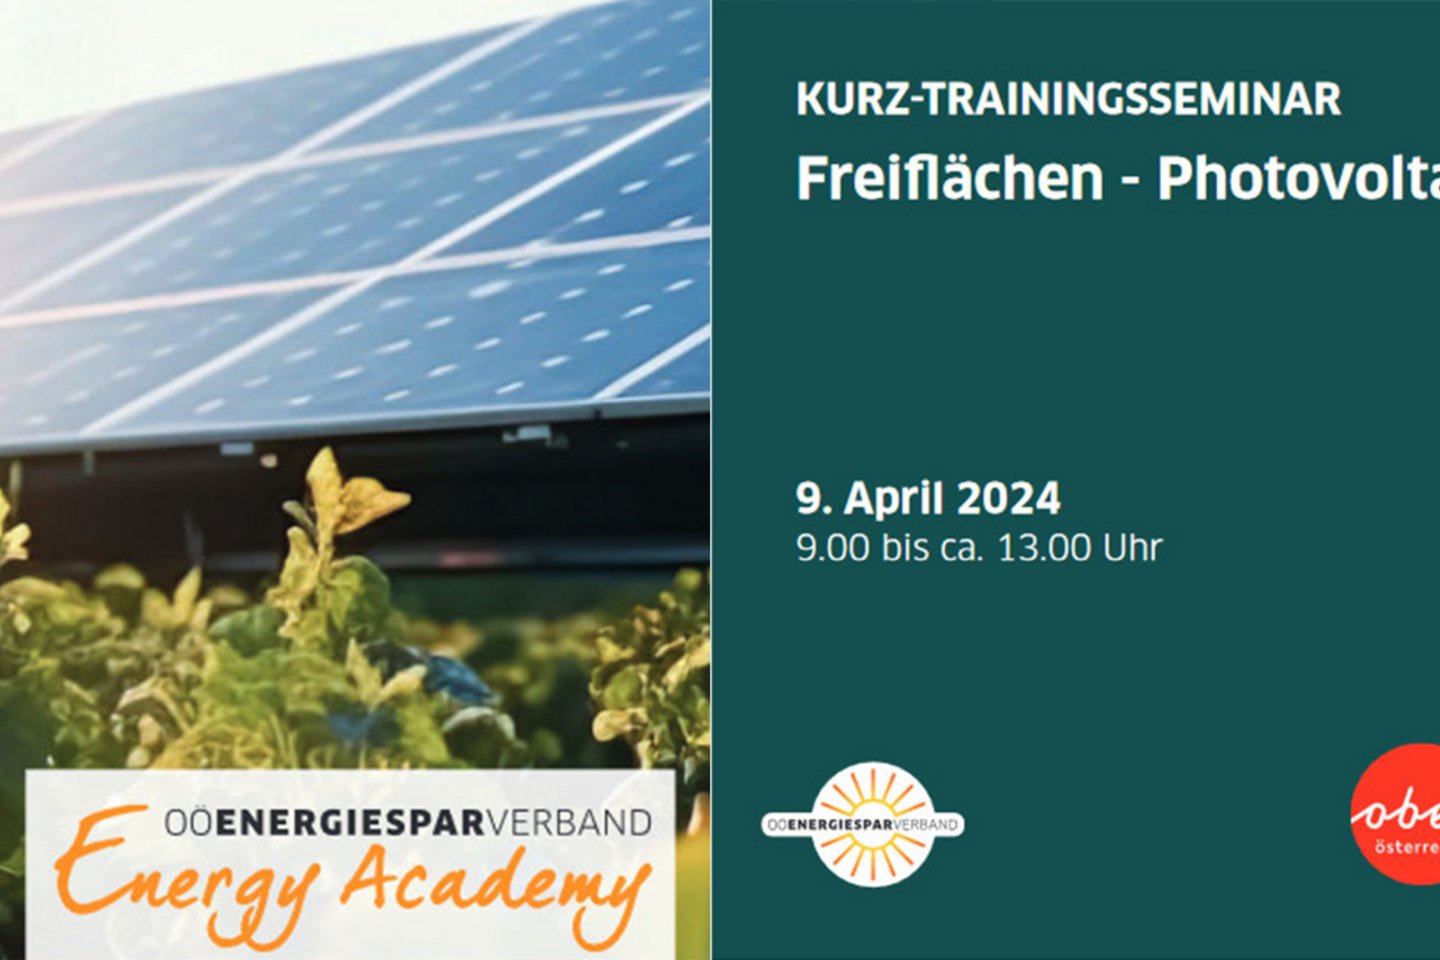 Freiflächen - Photovoltaik Kurz-Trainingsseminar vom OÖ Energiesparverband mit Joachim Payr für Agri-PV-Anlagen wie dem EWS Sonnenfeld